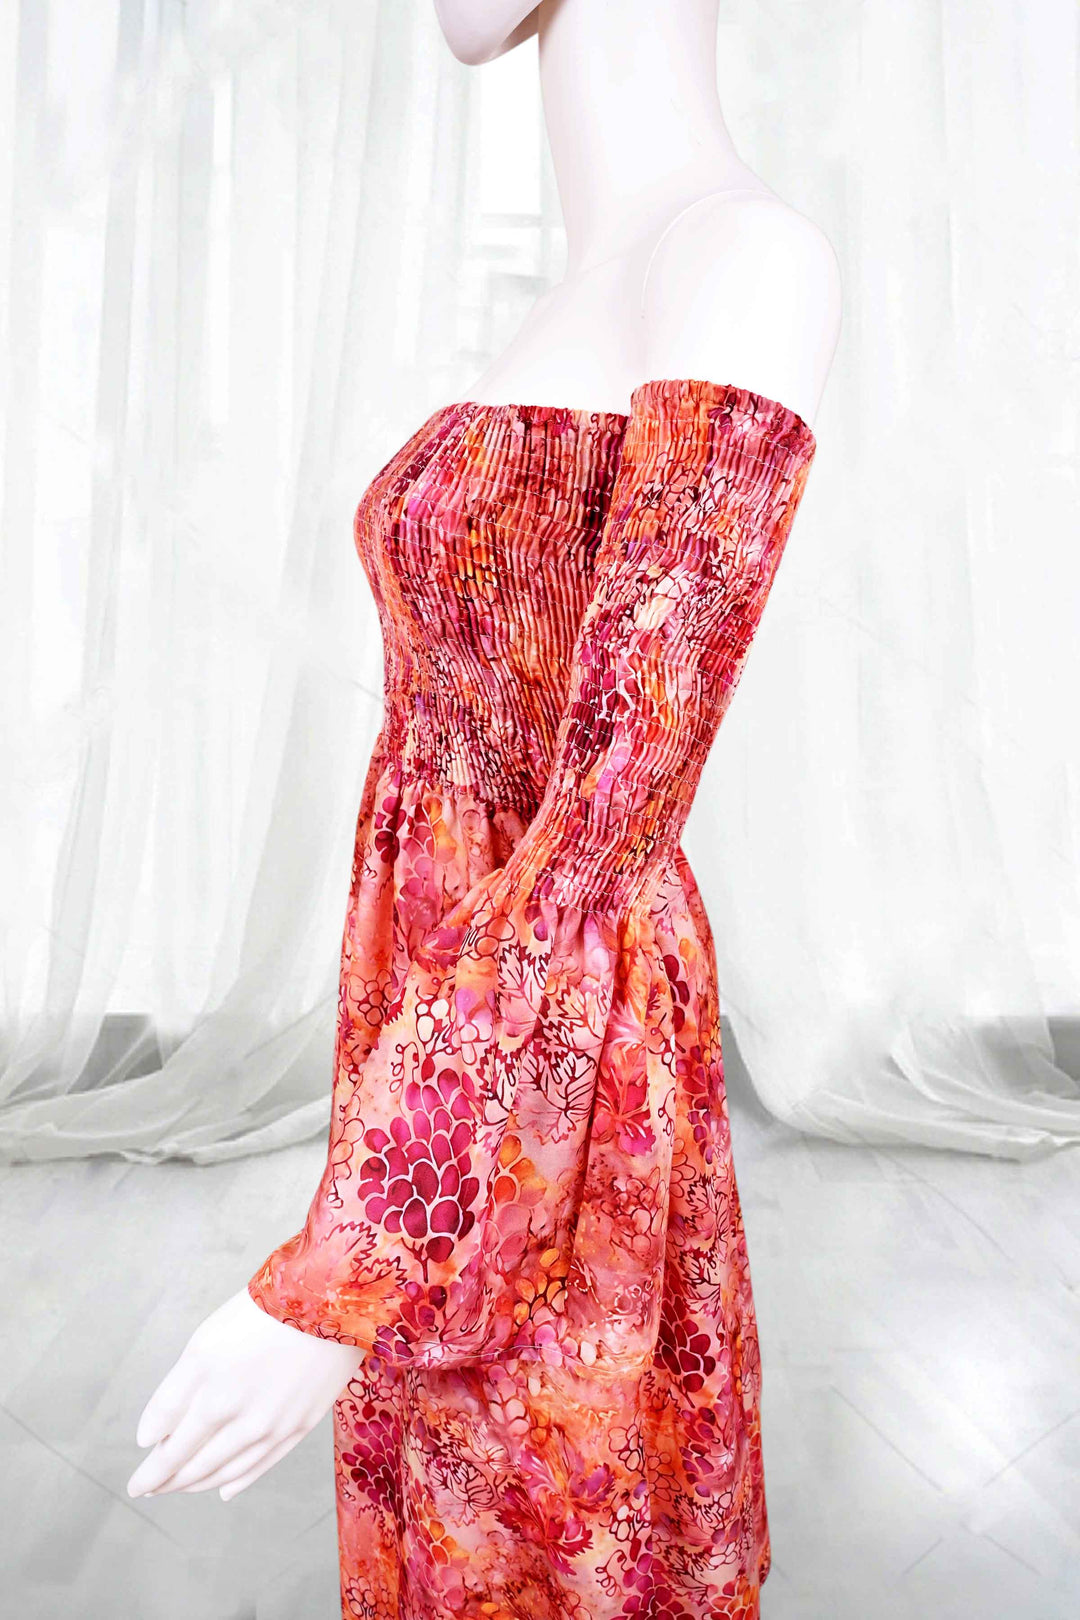 block print cotton dresses online store